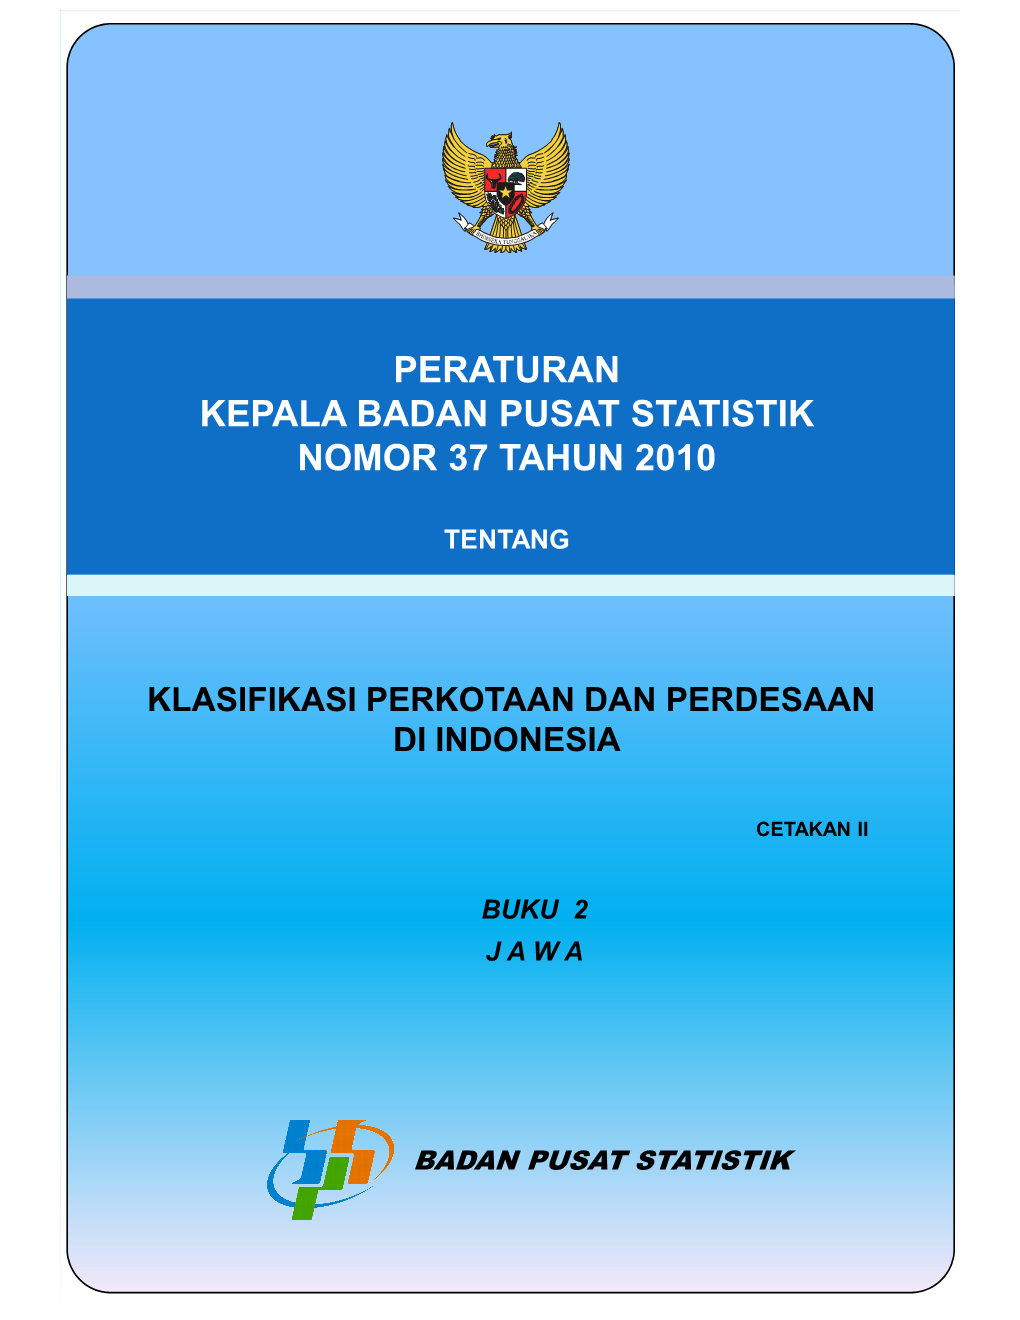 Peraturan Kepala Badan Pusat Statistik Nomor 37 Tahun 2010